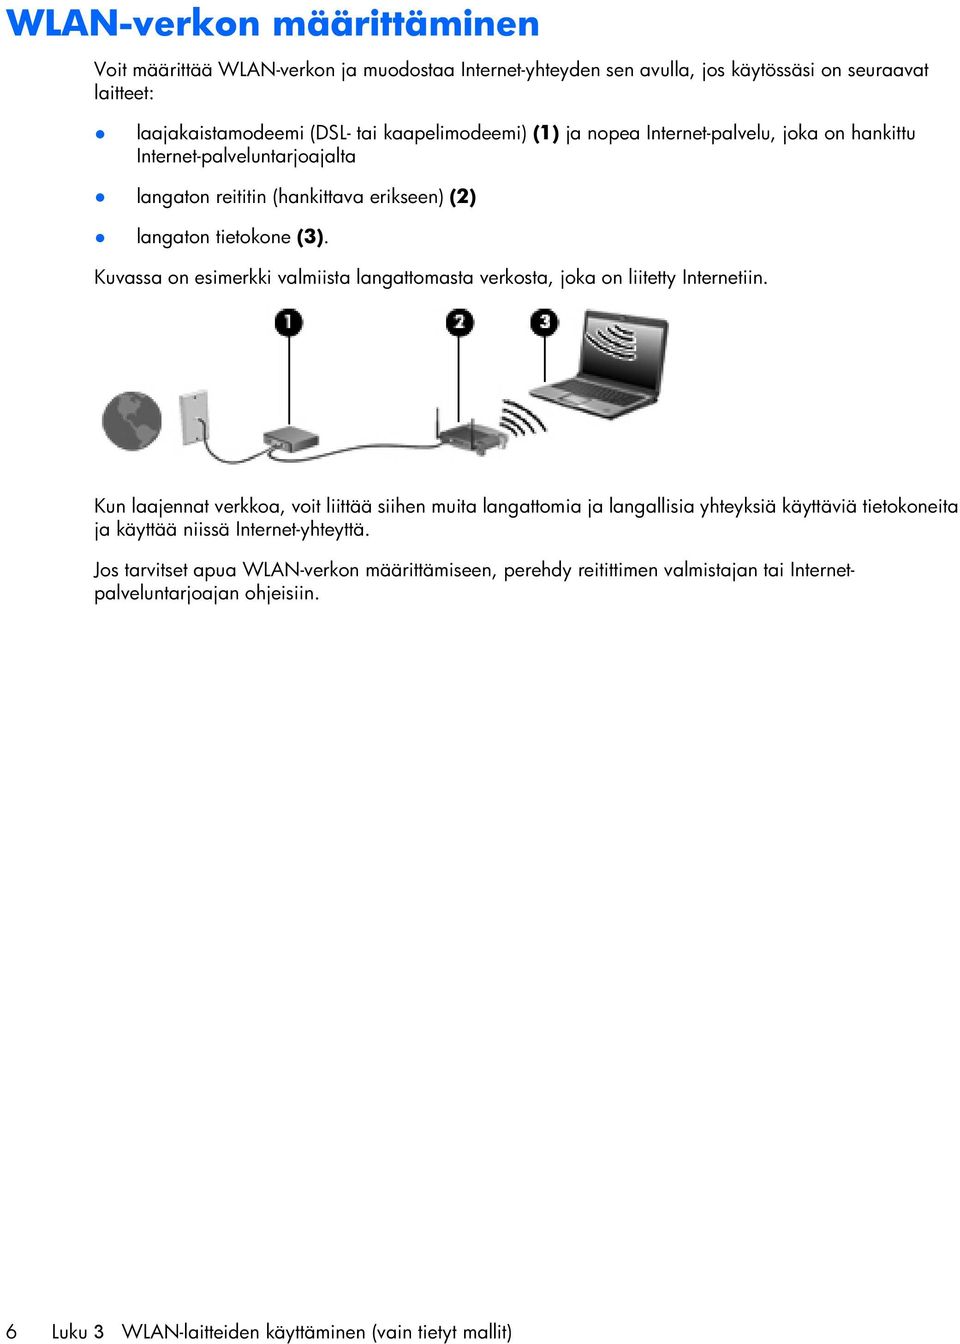 Kuvassa on esimerkki valmiista langattomasta verkosta, joka on liitetty Internetiin.